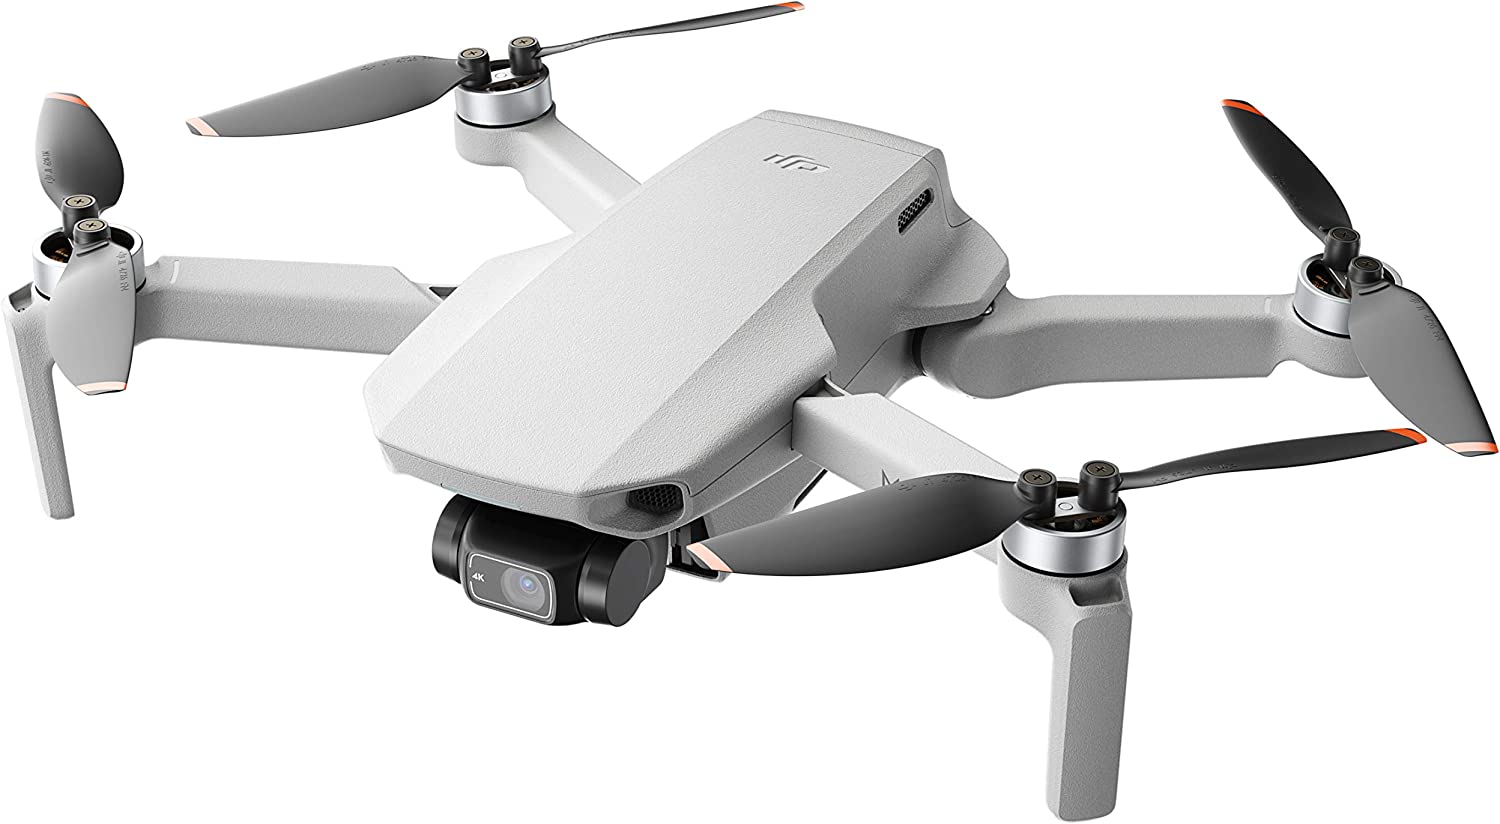 drone dji mavic mini 2 matériel photo/vidéo pour voyager